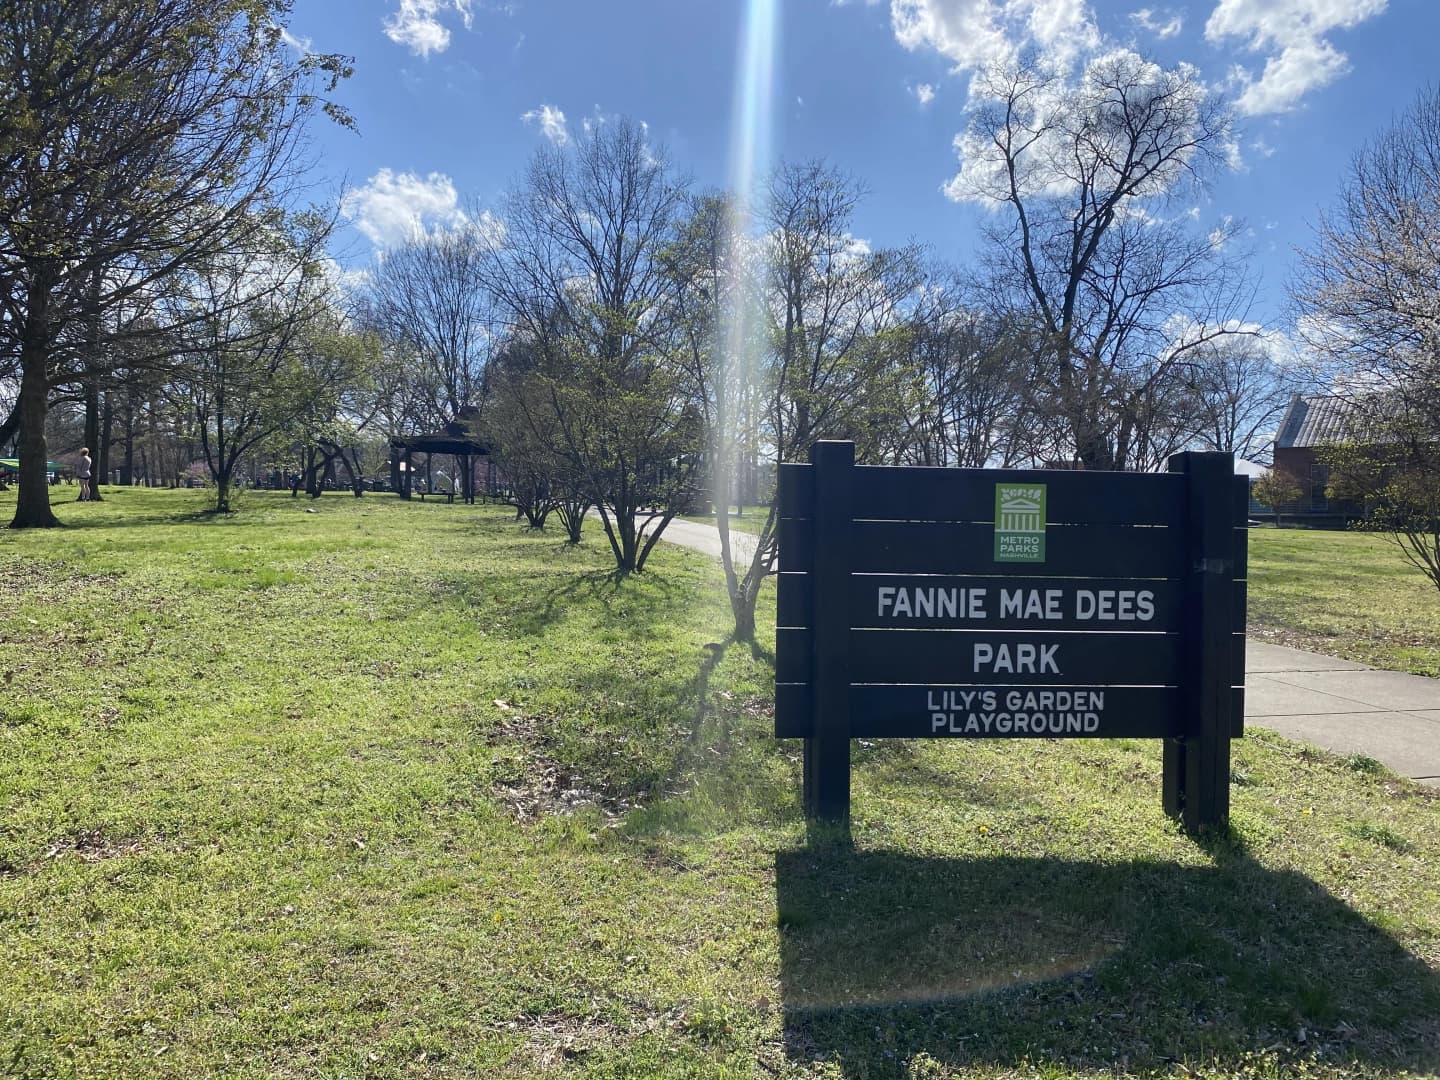 Fannie Mae Dees Park